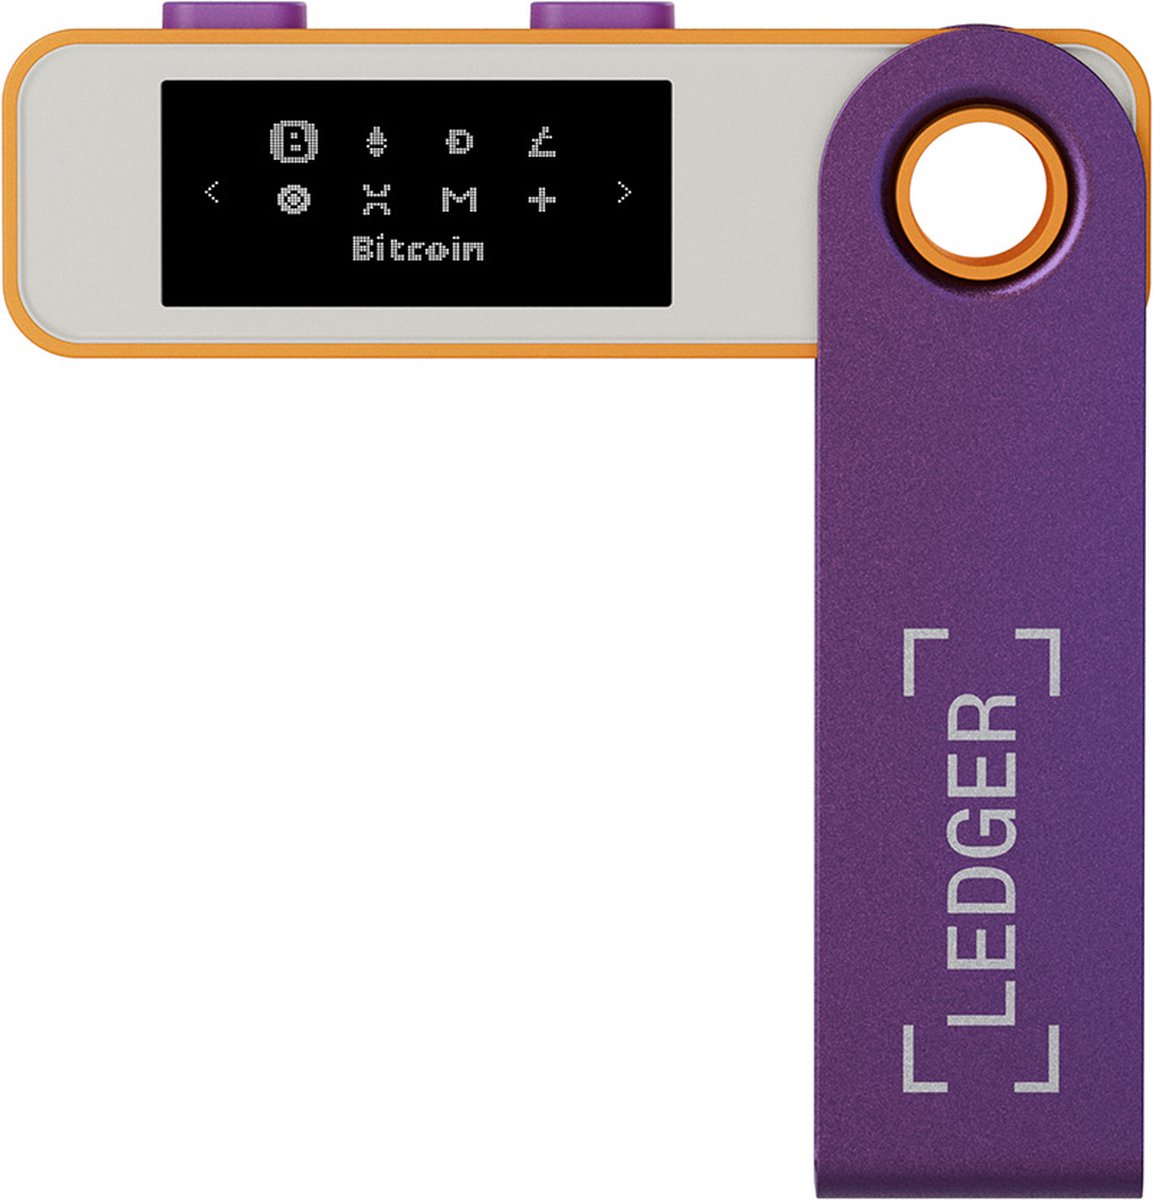 Ledger Nano S Plus - Hardware Wallet - het perfecte instapmodel voor het veilig beheren van al je crypto (Bitcoin) en NFT's - Retro Gaming - Ledger